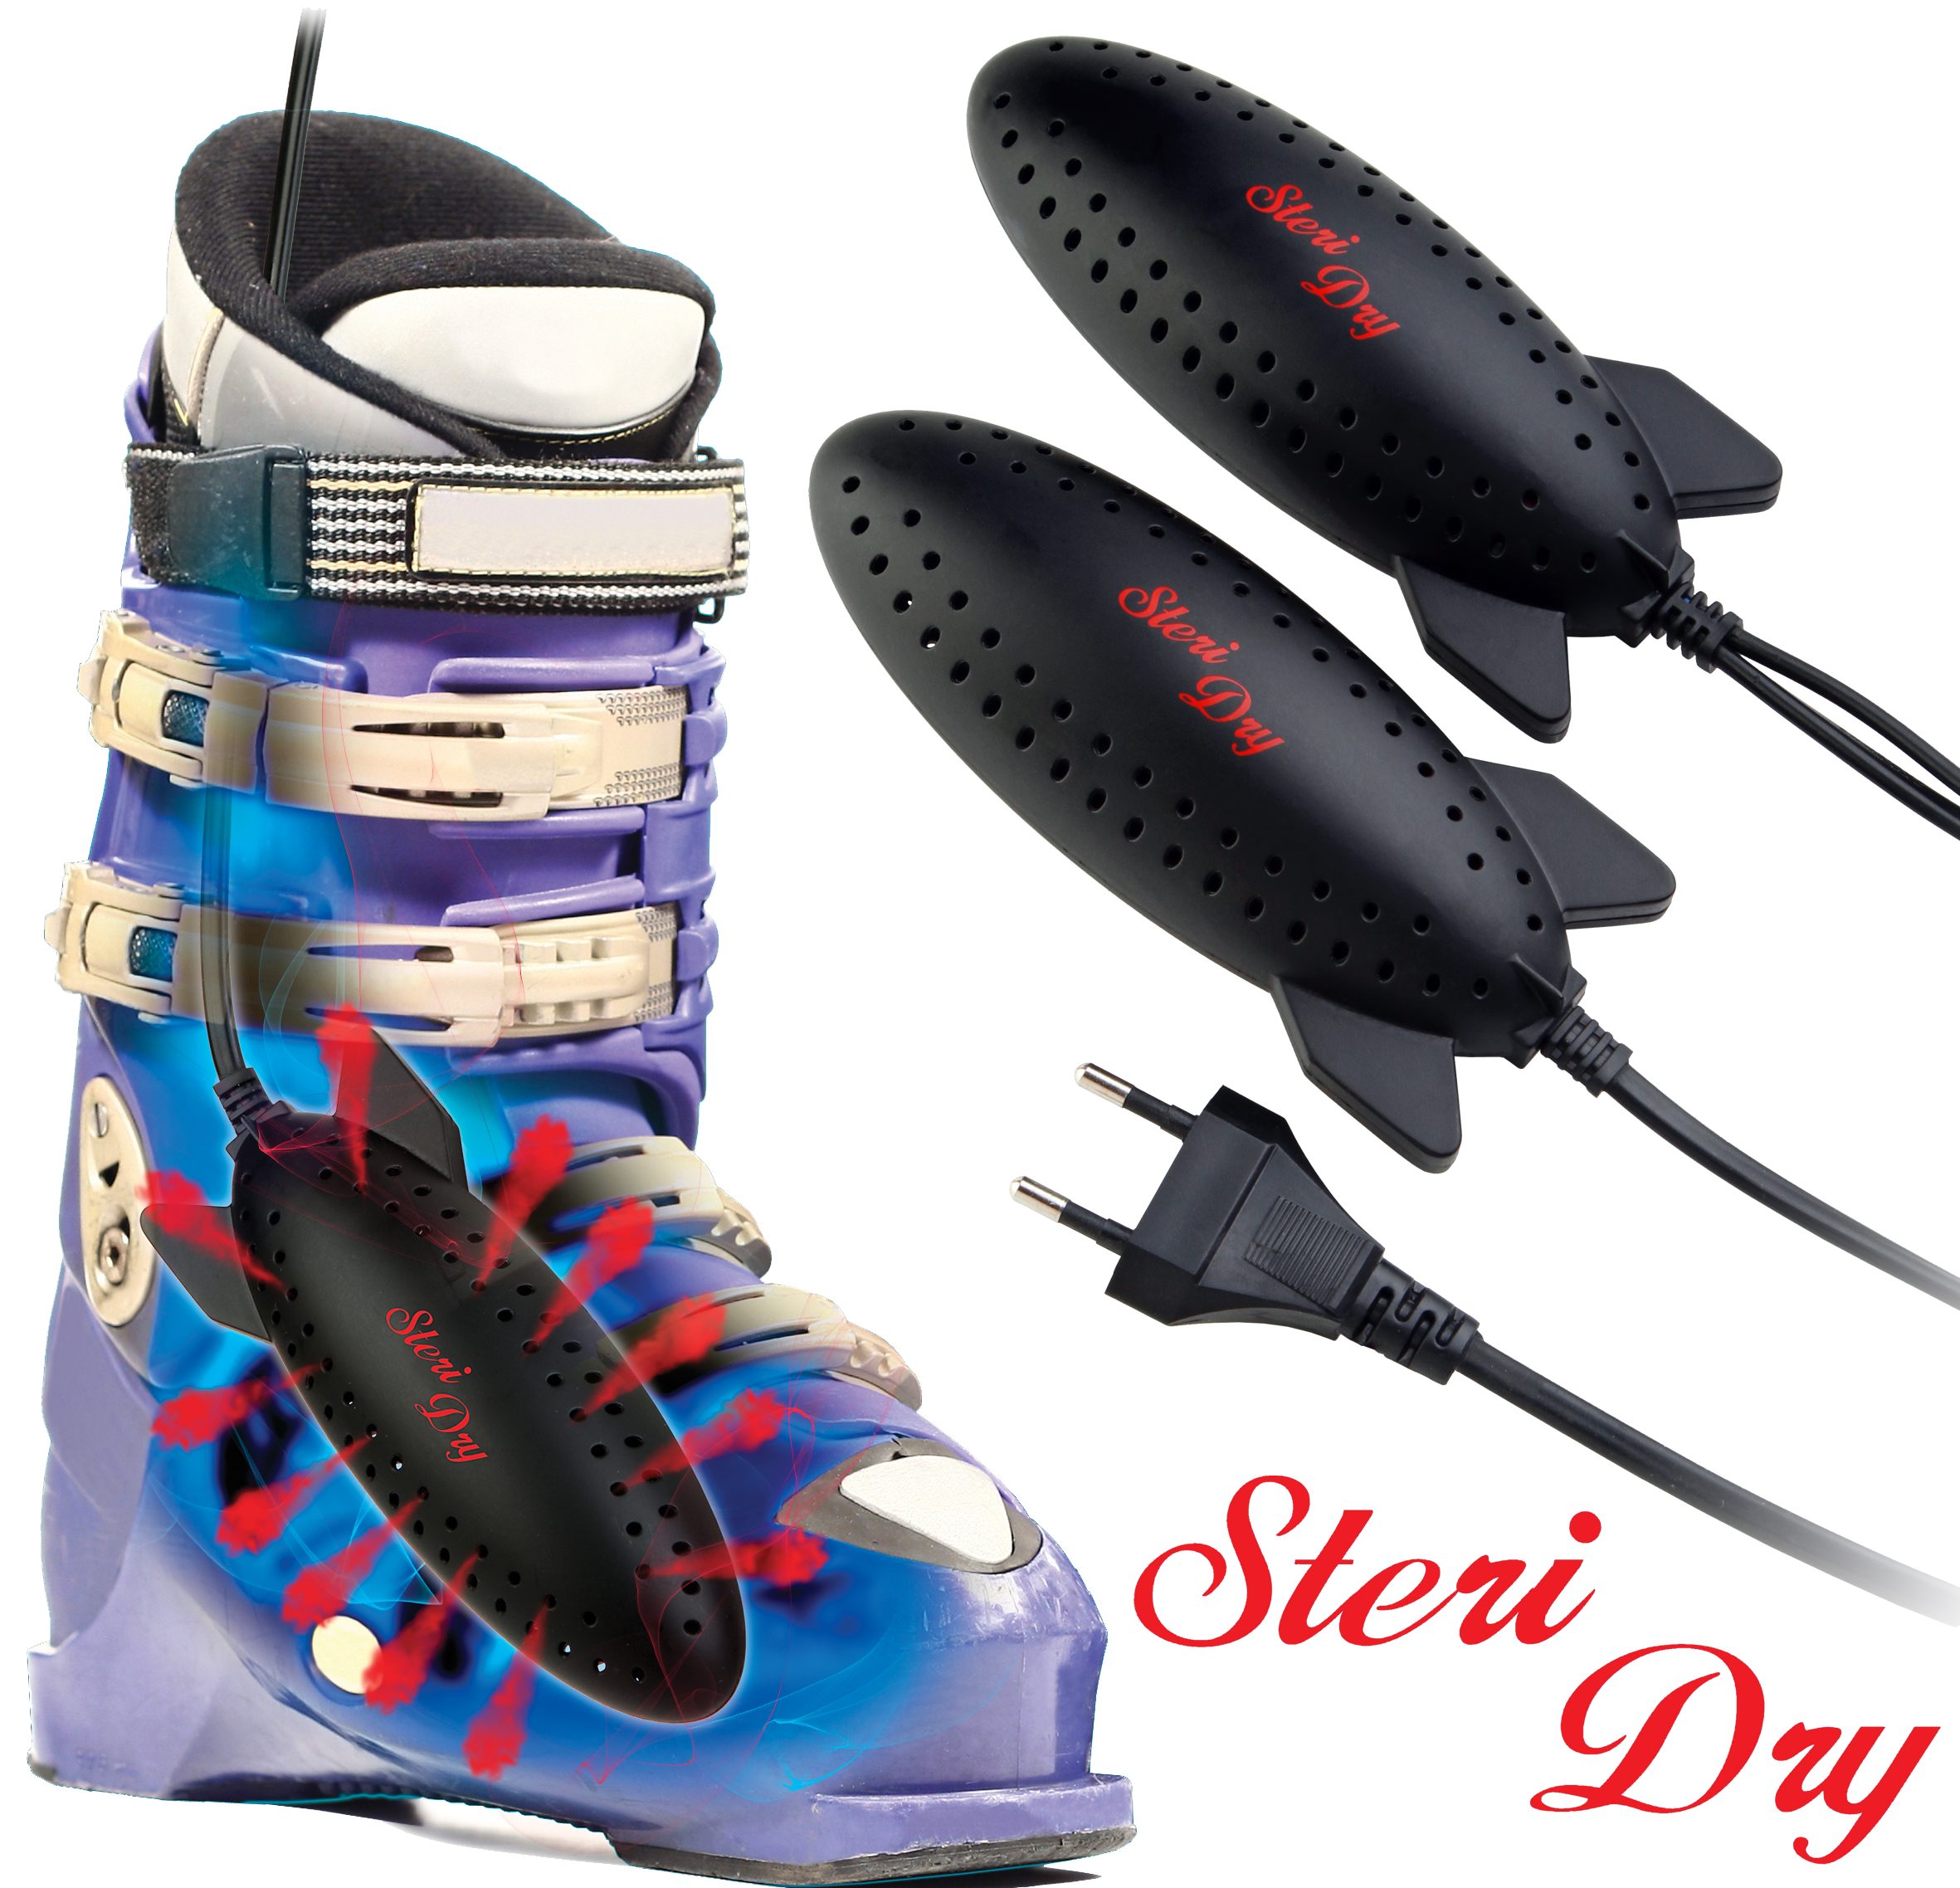 Dry „Das e4fun Steri für Schuhe ein Original“ UV-Schuhtrockner Paar Schuhtrockner